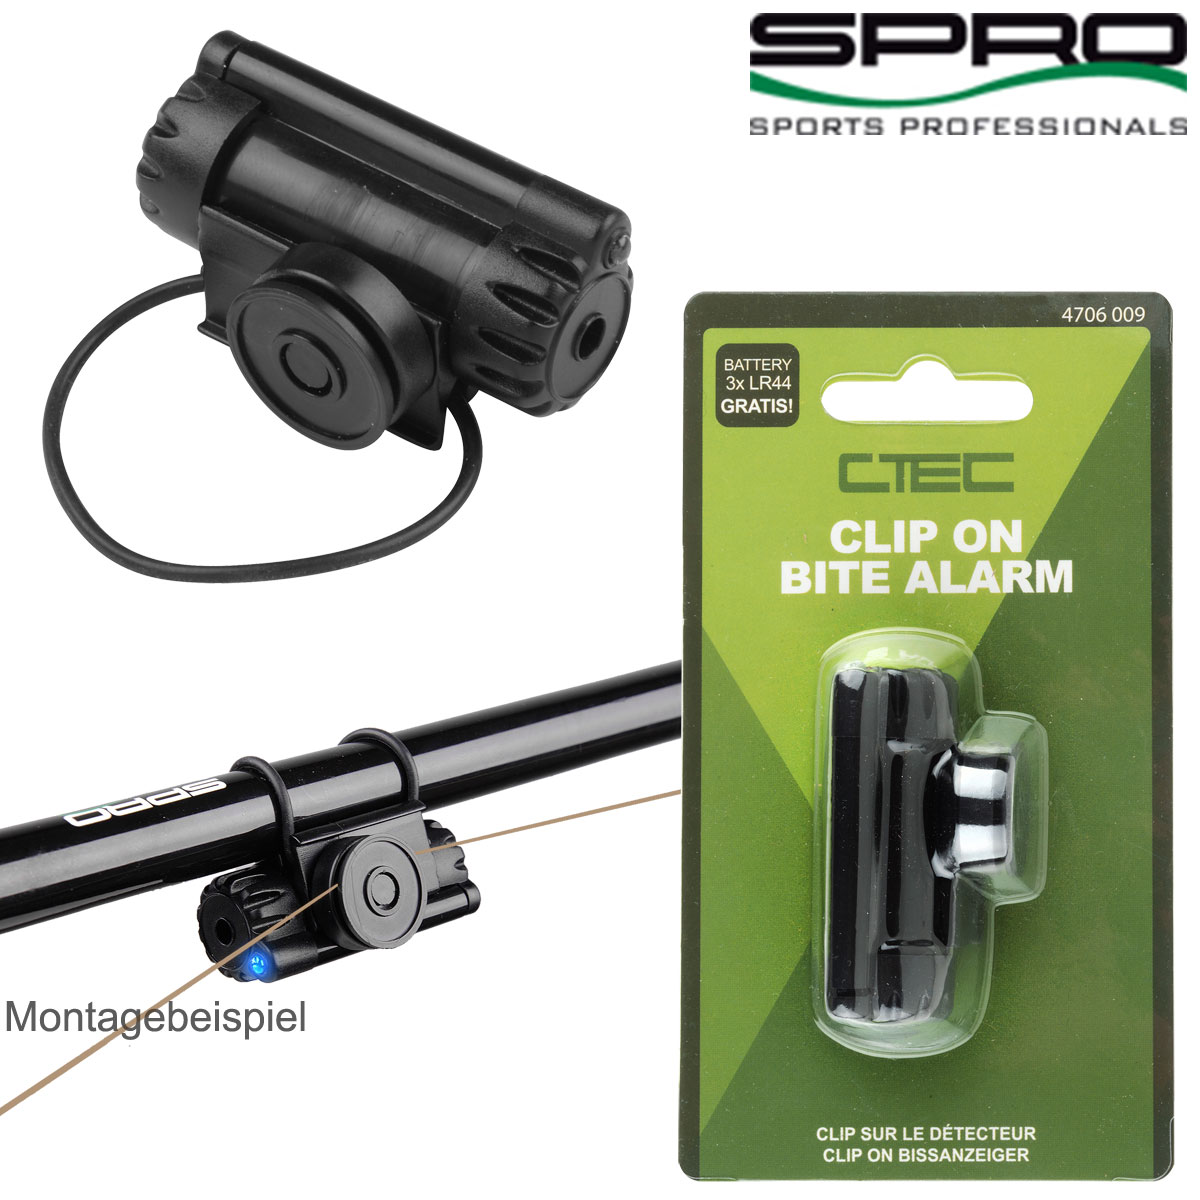 SPRO | C-TEC Clip On Bite Alarm | elektronischer Bissanzeiger inkl. Batterie